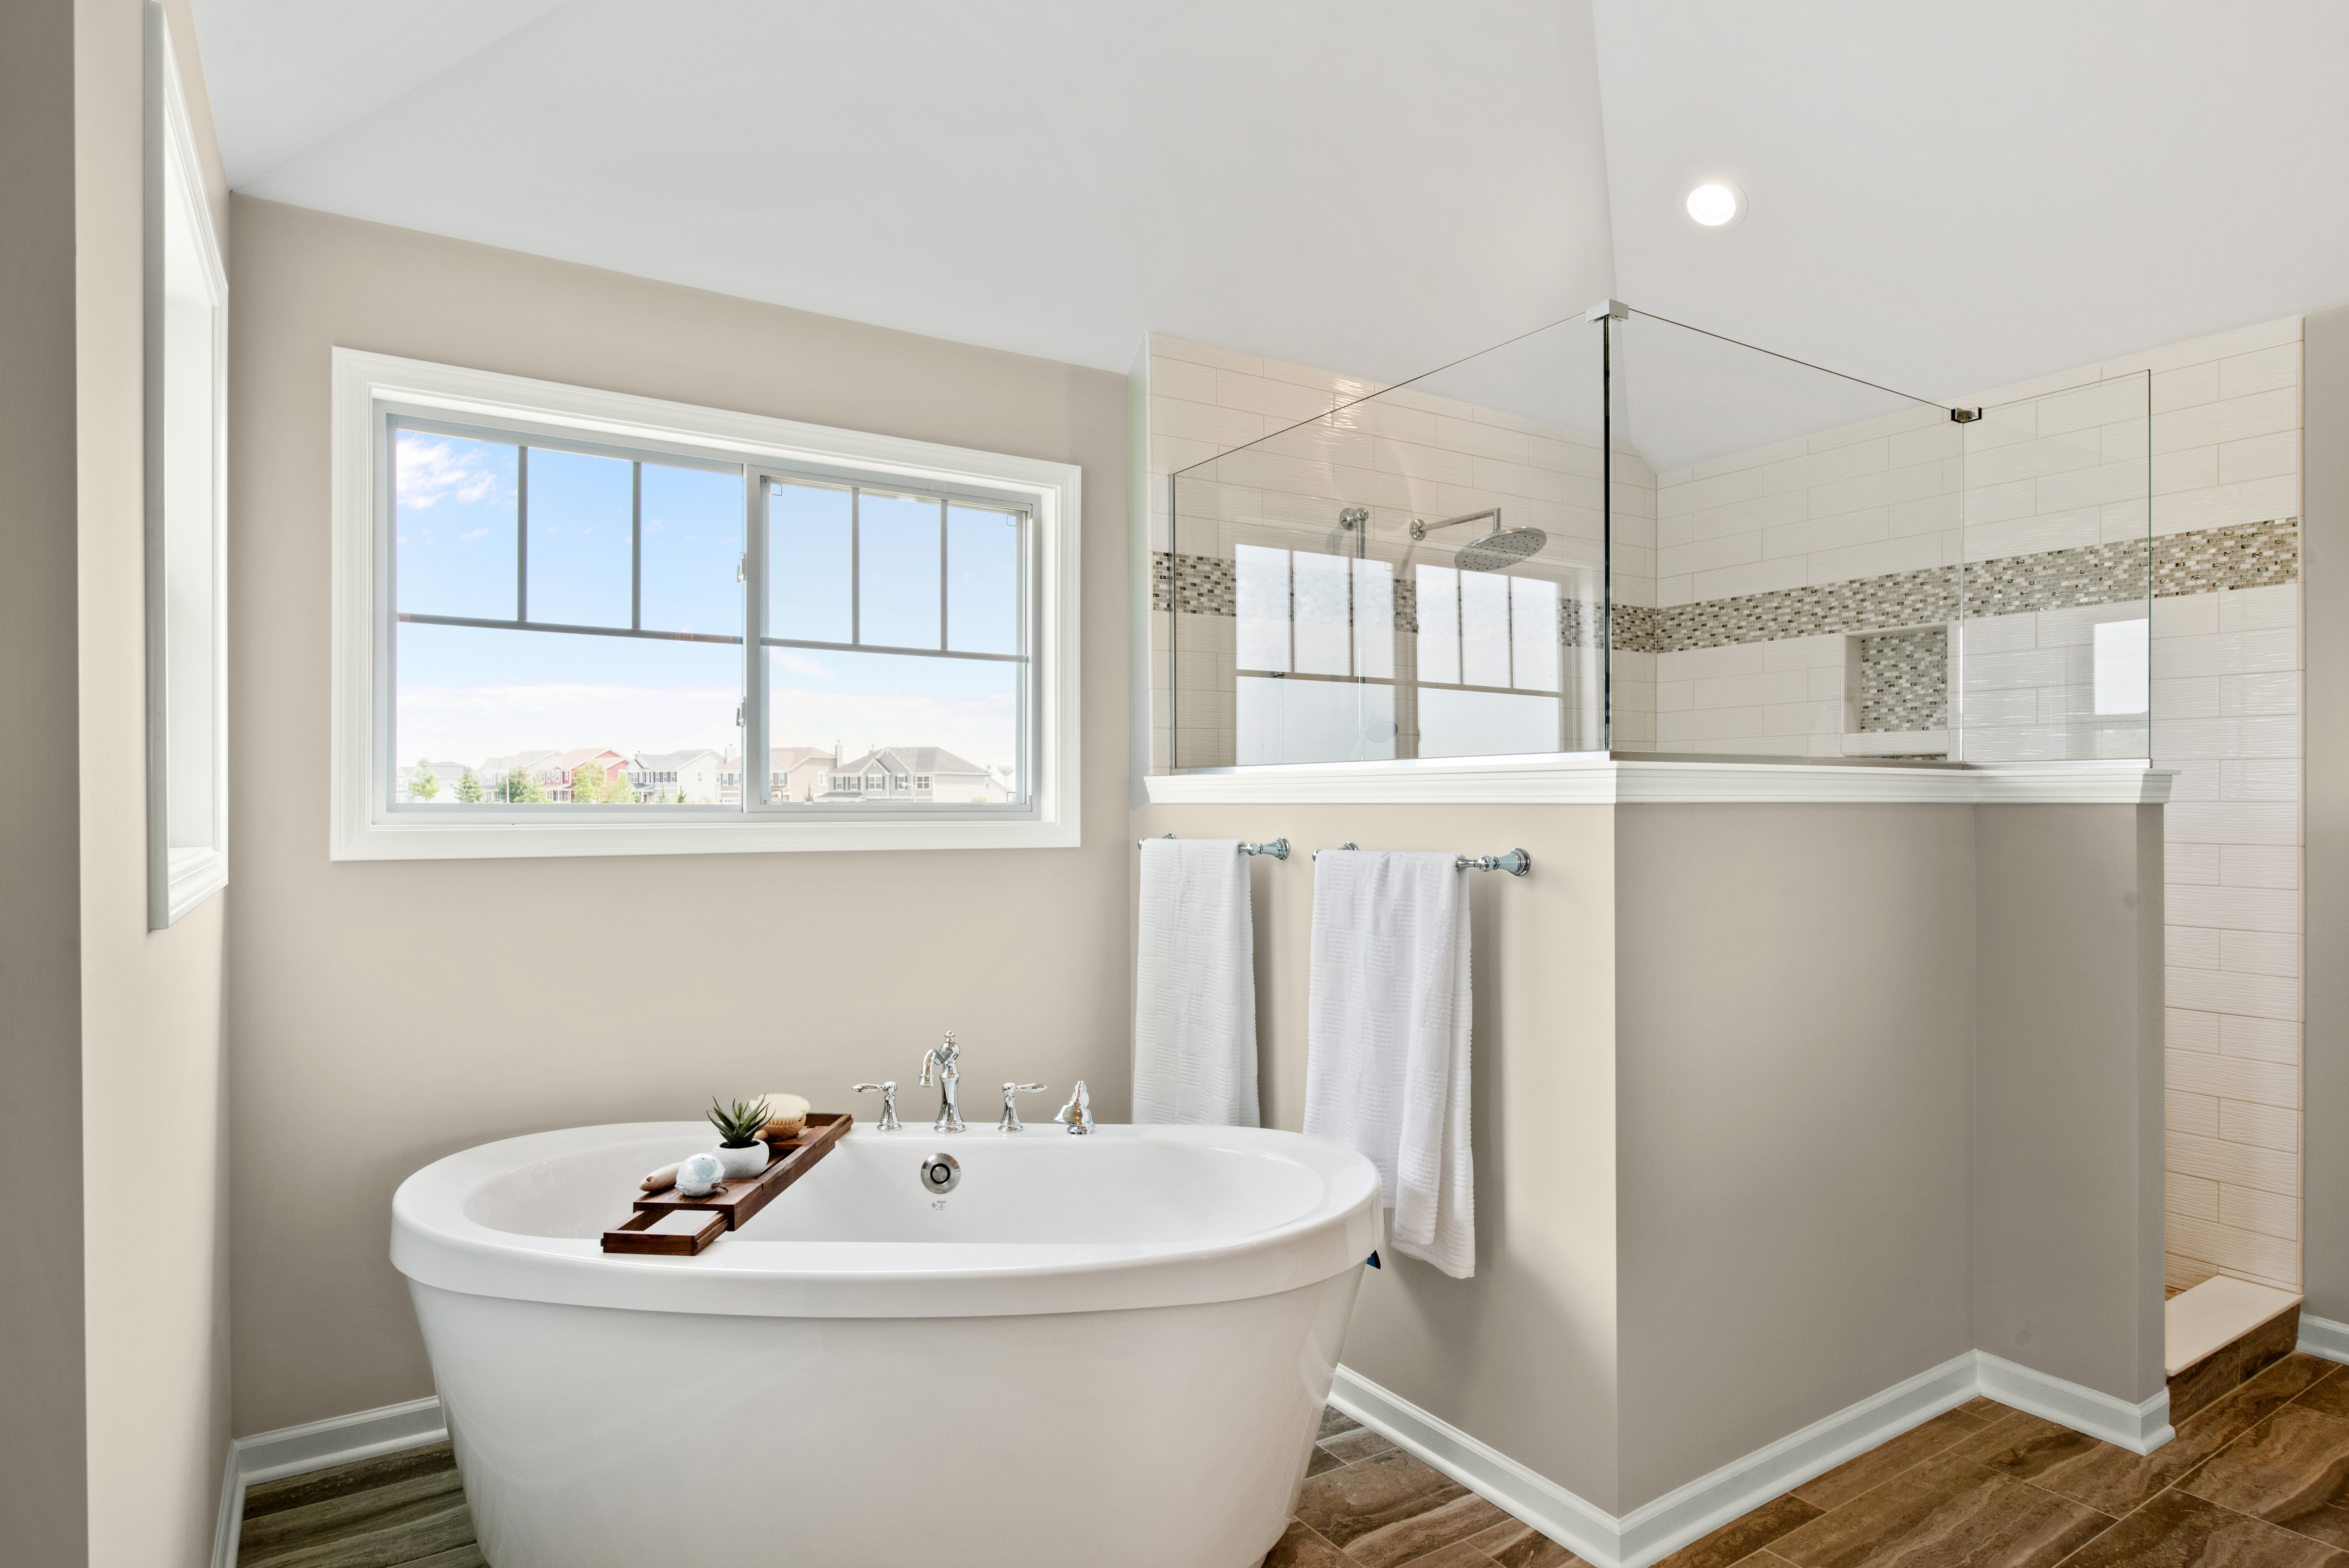 Une grande salle de bain peinte en Encore plus beige, avec douche et baignoire distinctes comme un spa-maison.